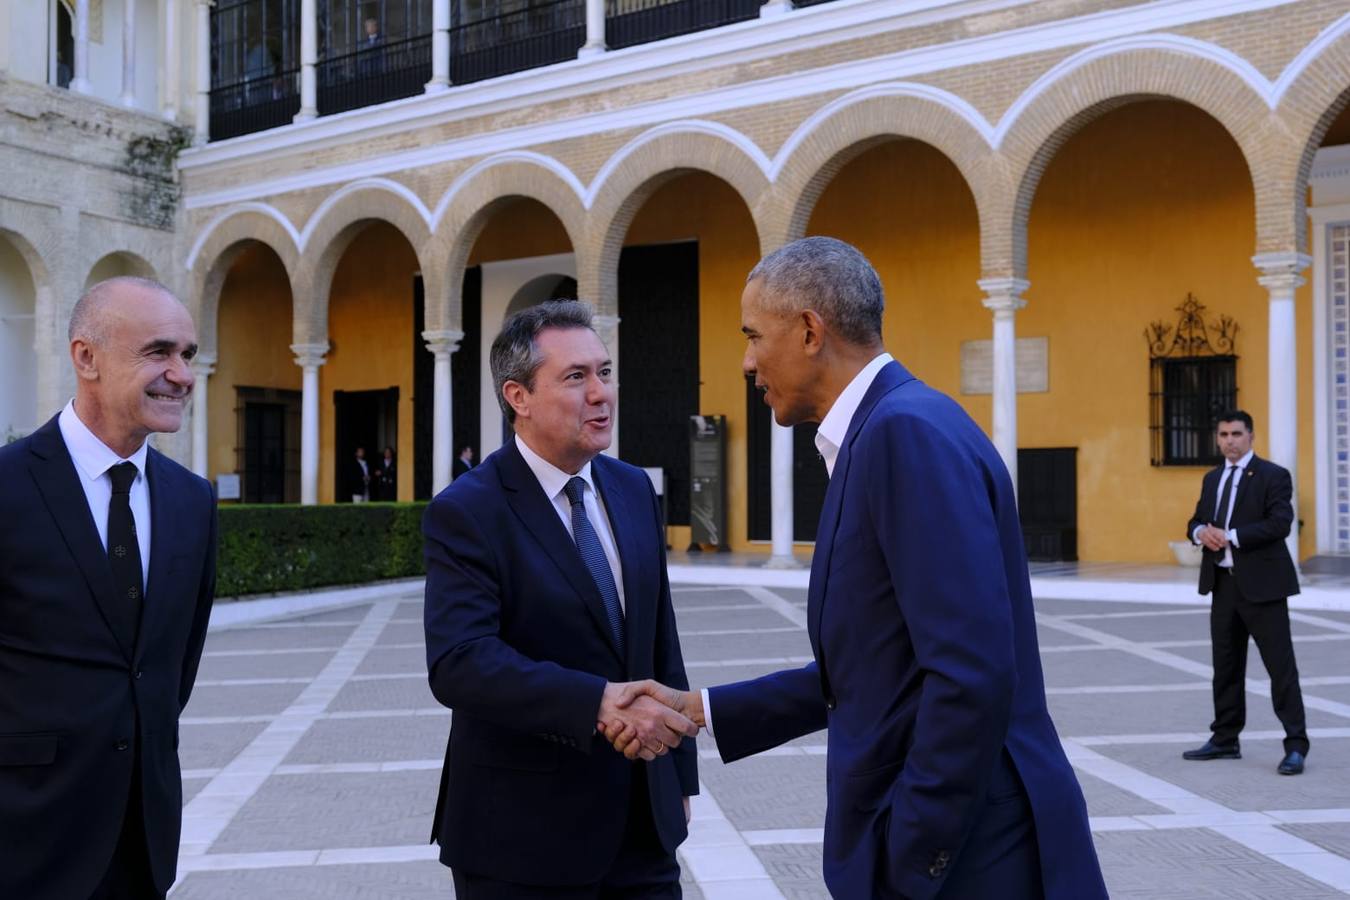 El expresidente saluda al alcalde Juan Espadas en el Real Alcázar